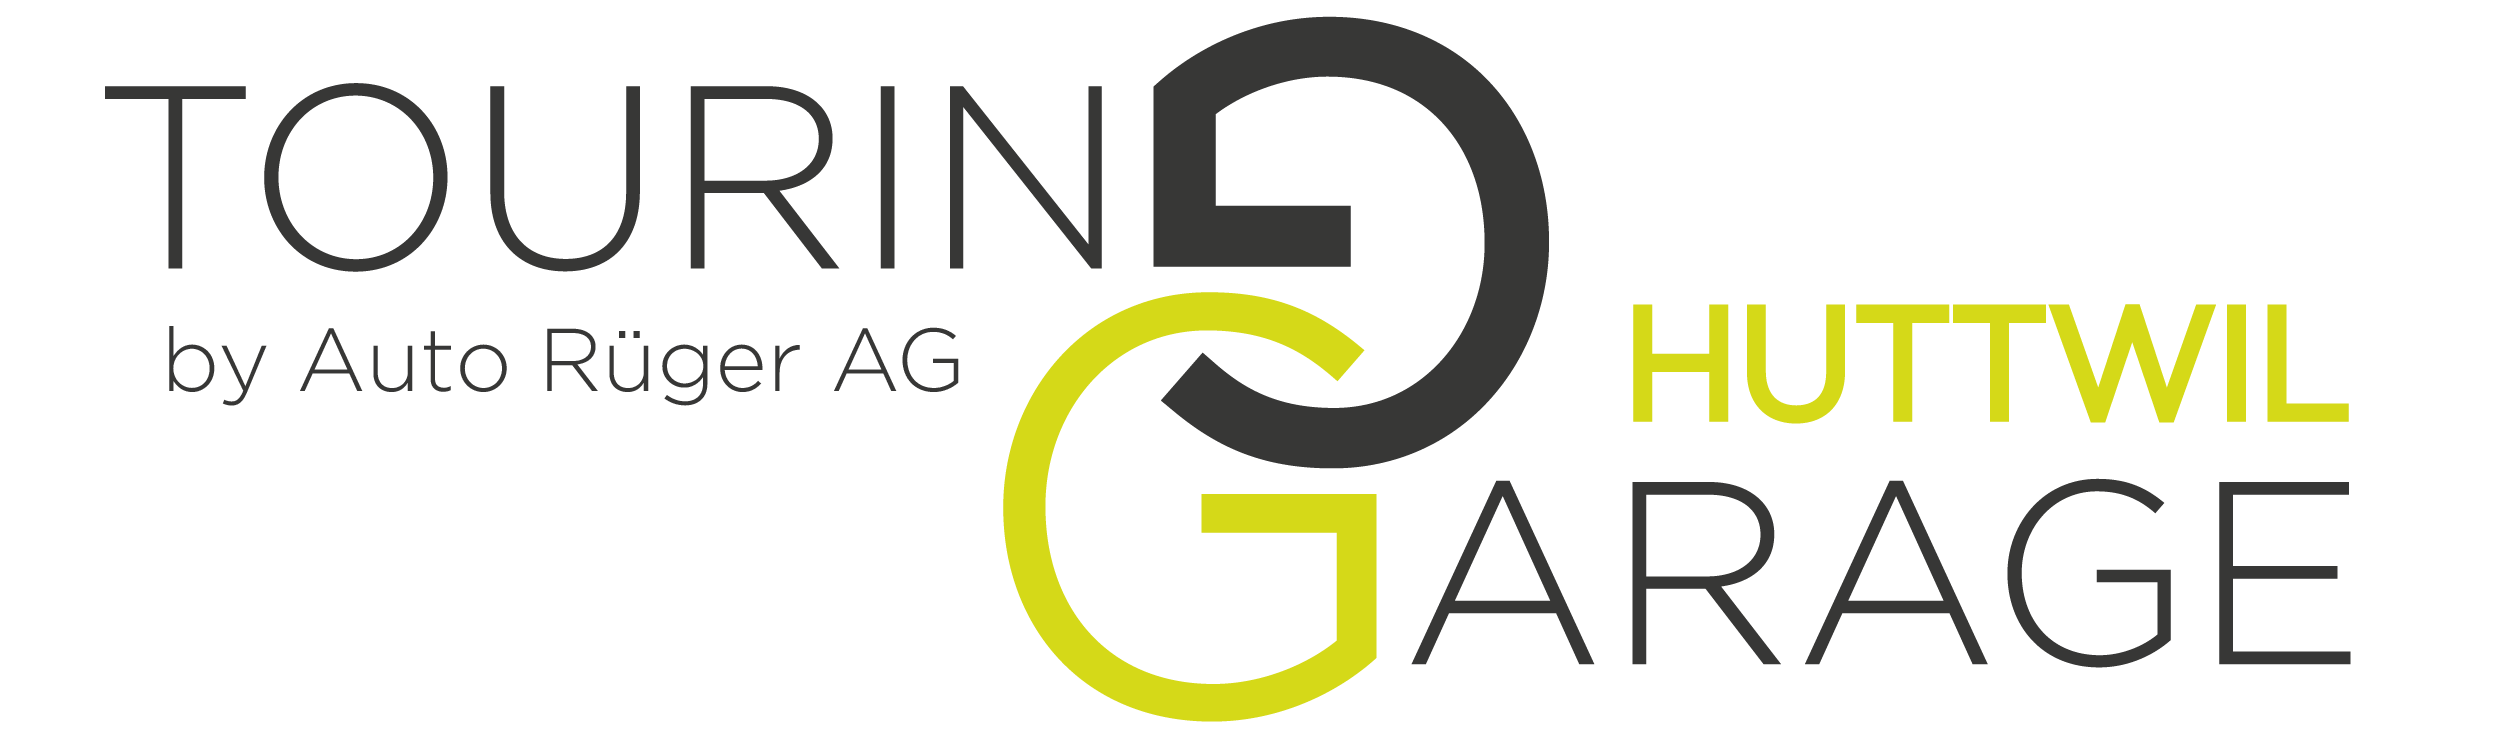 Logo Touring-Garage AG Huttwil